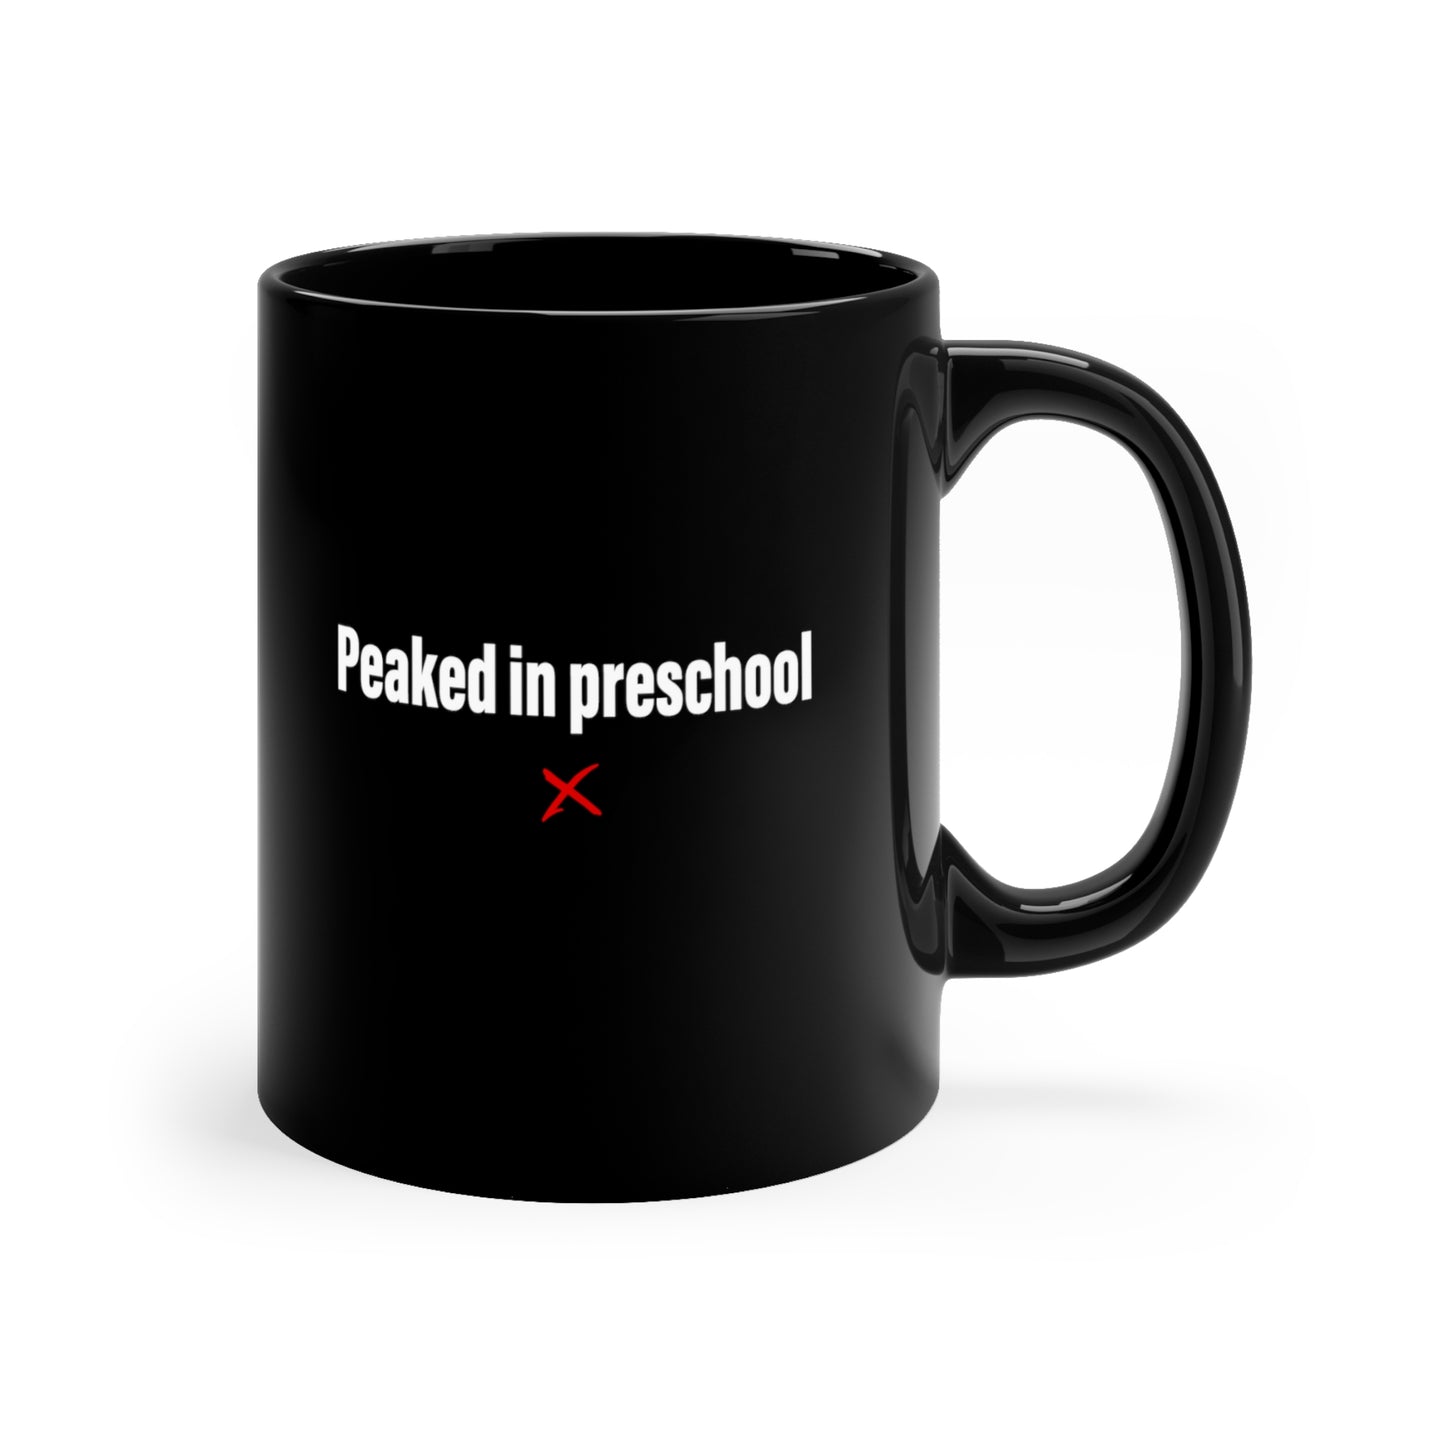 Peaked in preschool - Mug